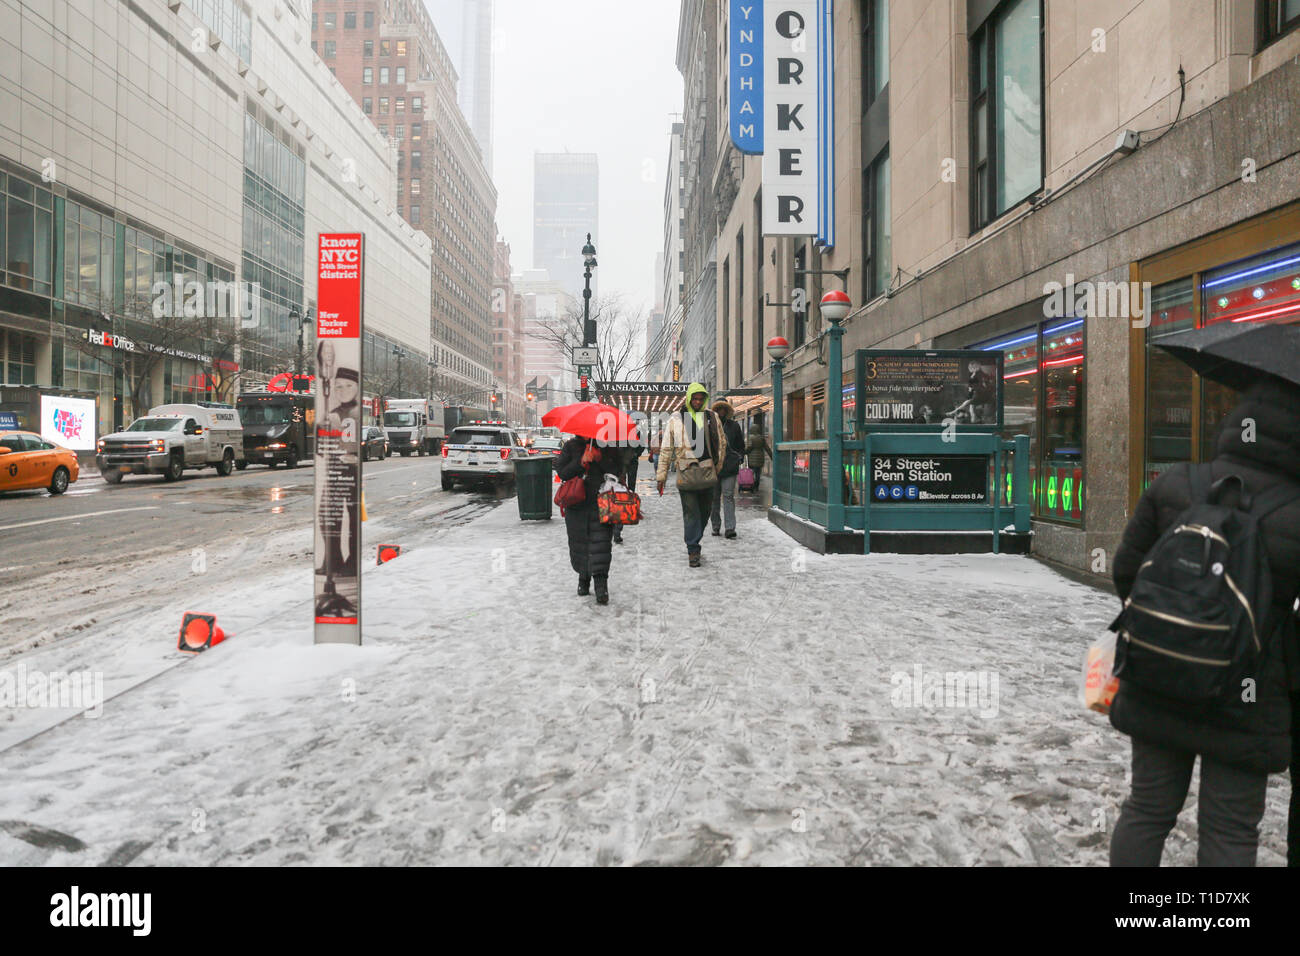 New York, USA, 12. Februar 2019: Ein Winter Schneesturm bringt Verkehr und Fußgänger auf ein langsames Kriechen auf der New York Street. - Bild Stockfoto